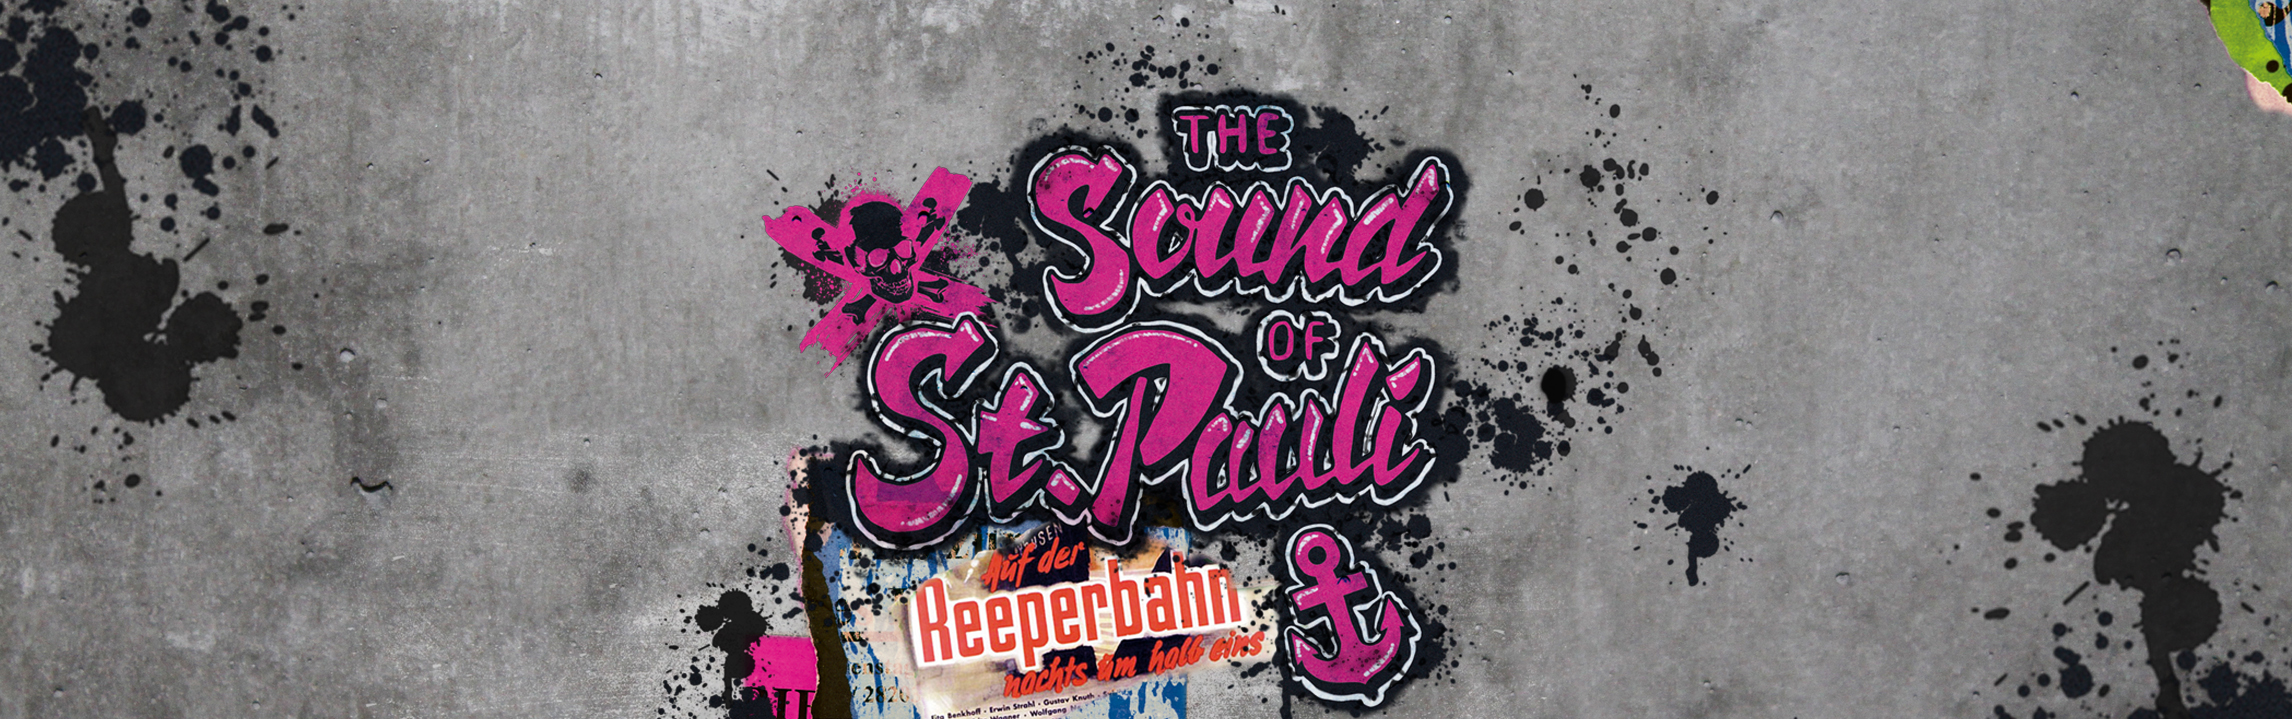 THE SOUND OF ST. PAULI VOL. 2 – LIVE-Konzert am 3. Oktober